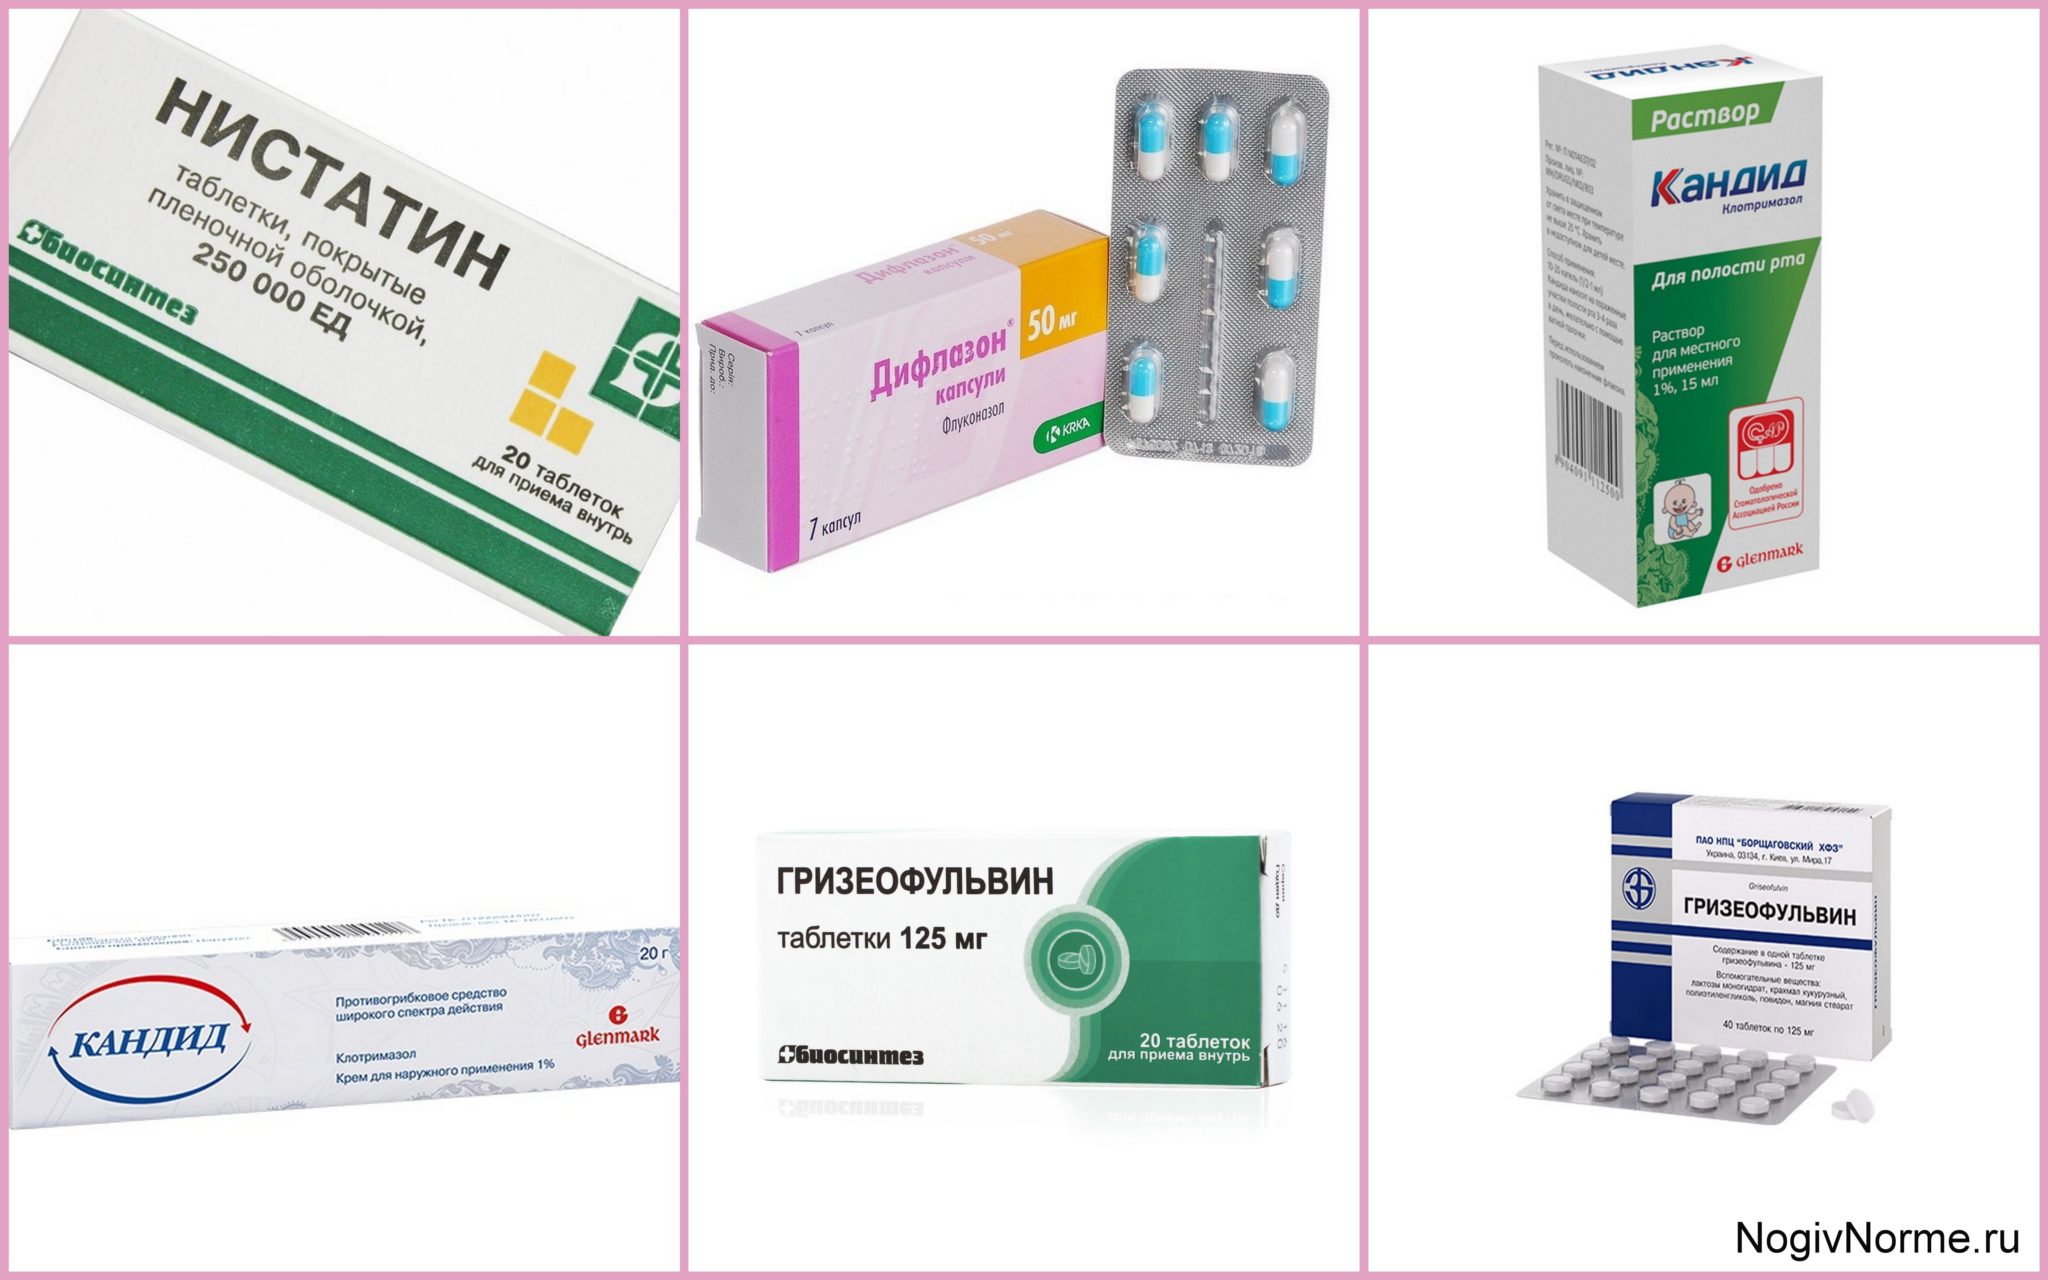 Противогрибковые препараты широкого спектра таблетки